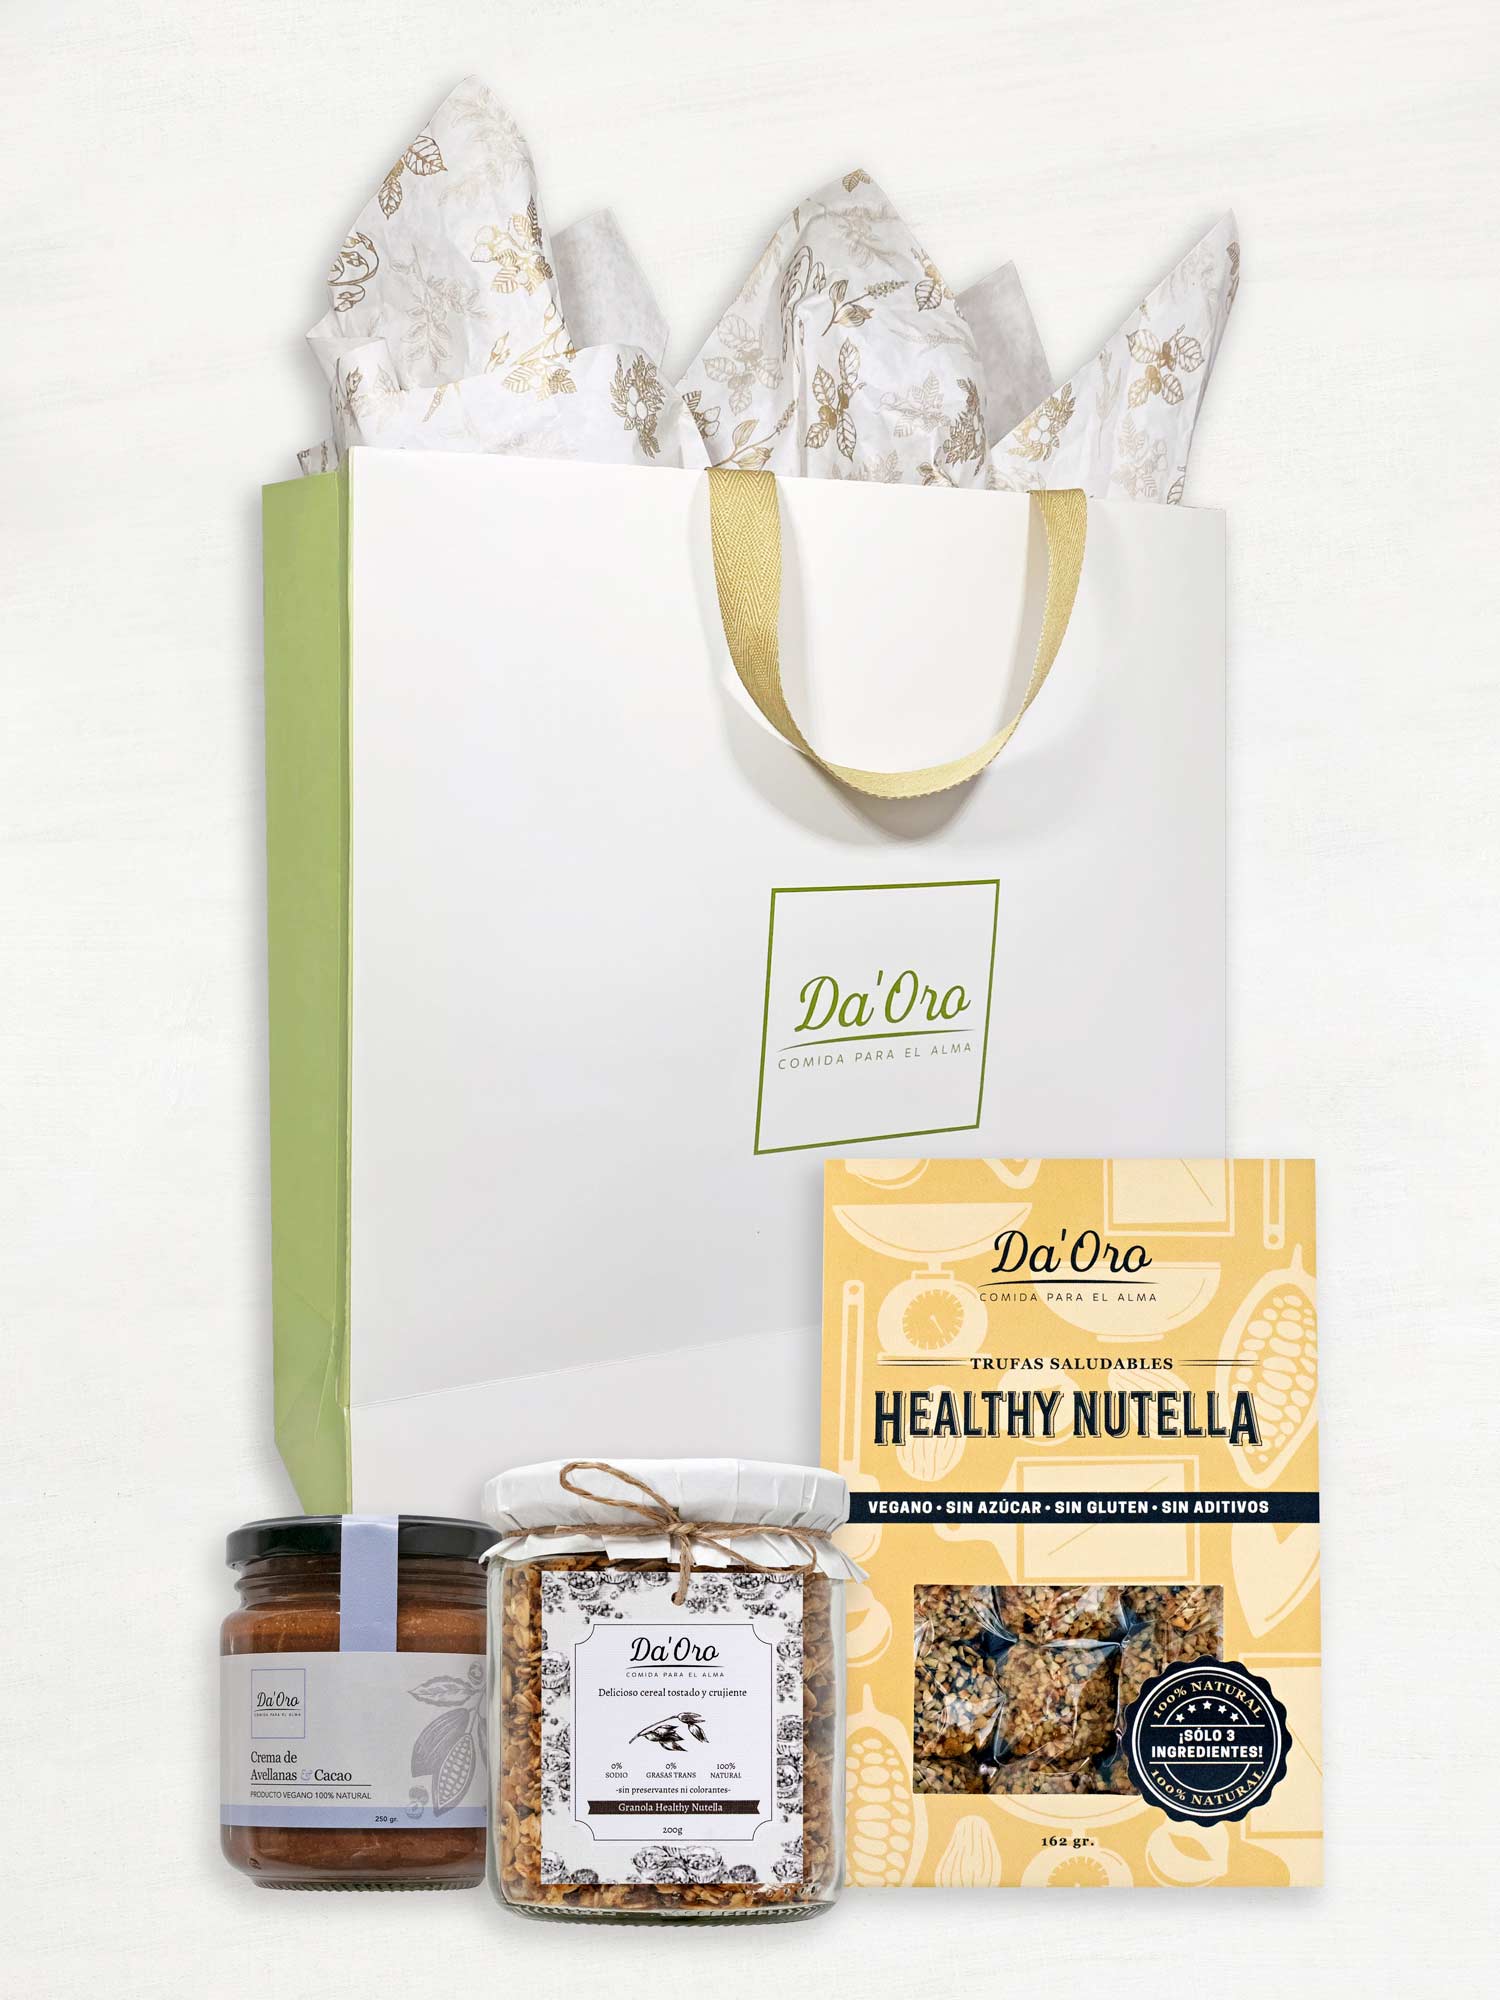 Bolsa de regalo marca Da'Oro con frasco de nutella, frasco de granola y caja de trufas healthy nutella